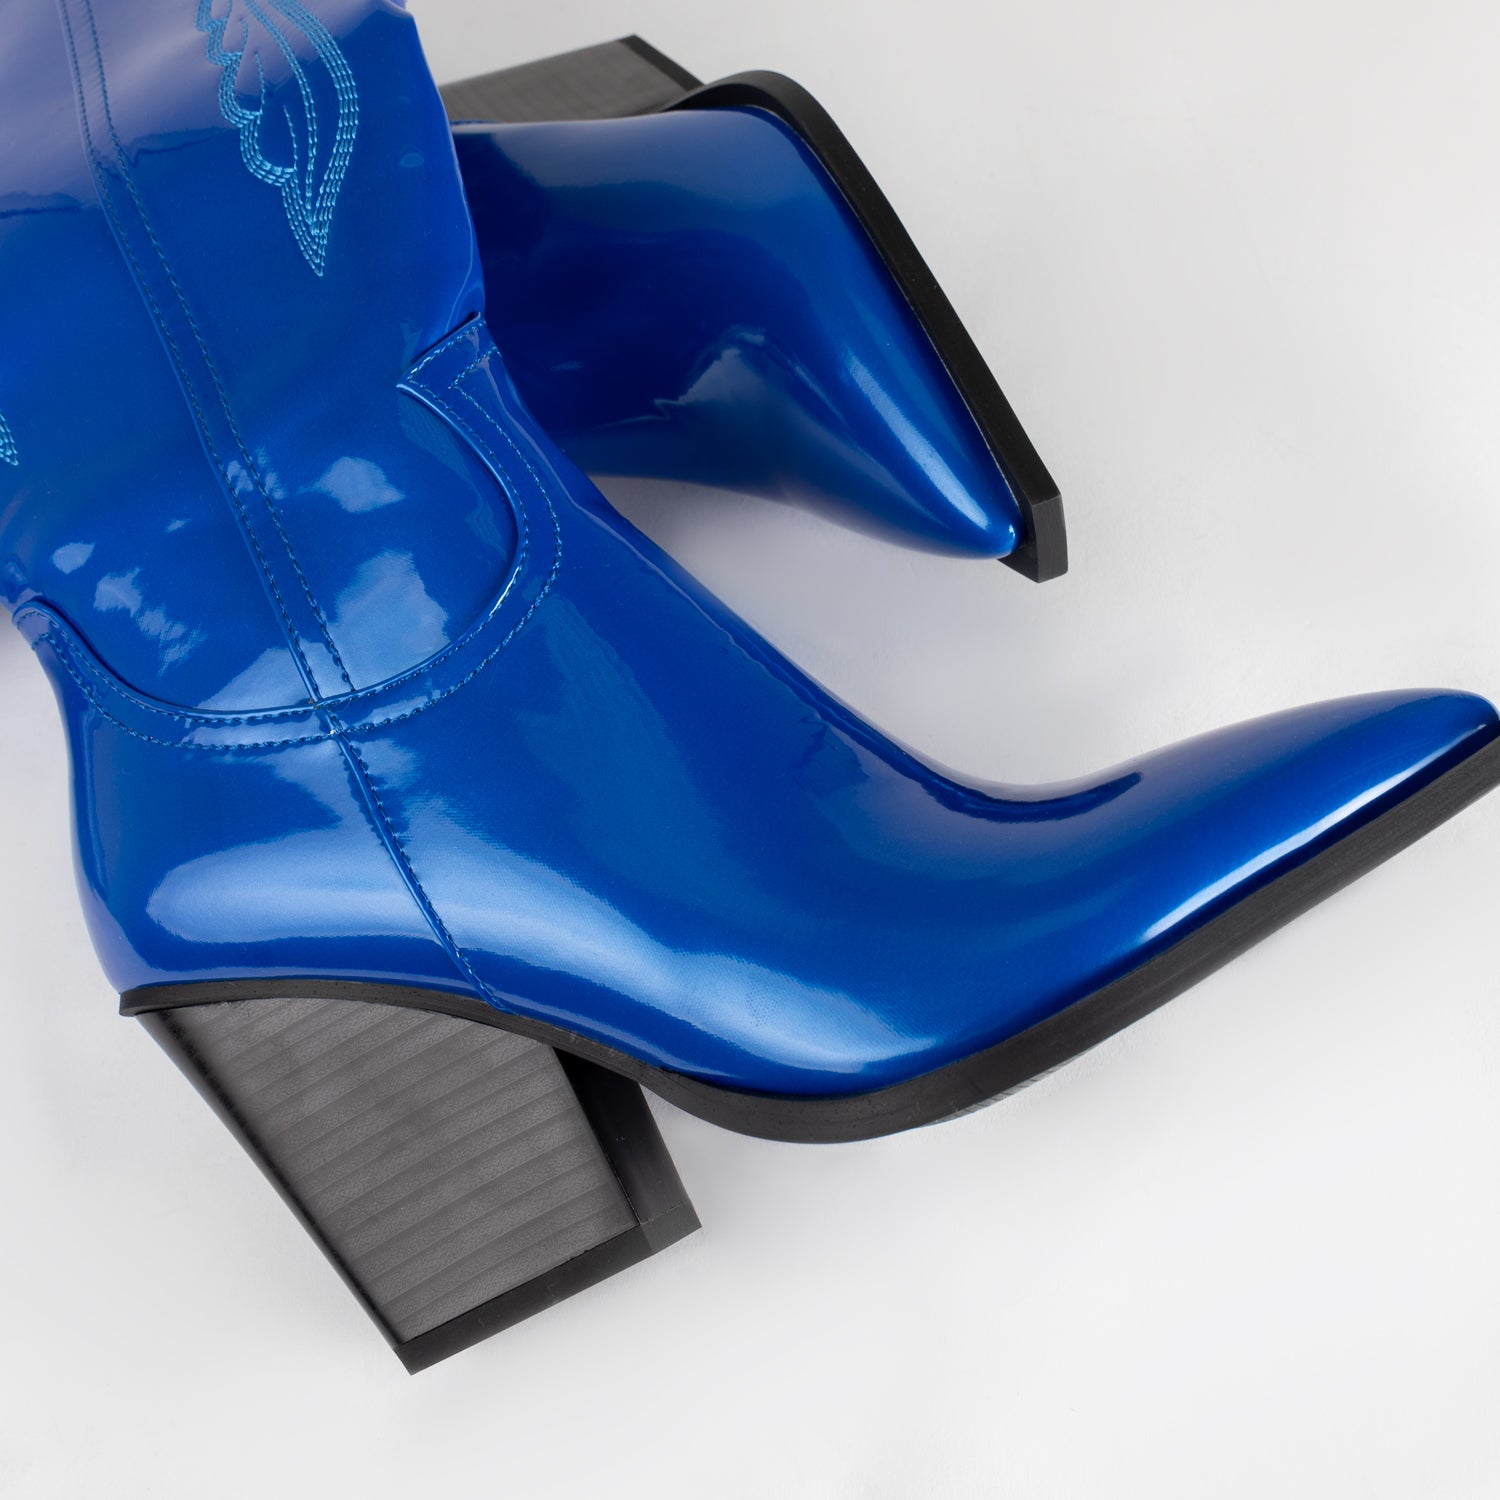 RAID Oshaa Knee High Western Boots in Blue